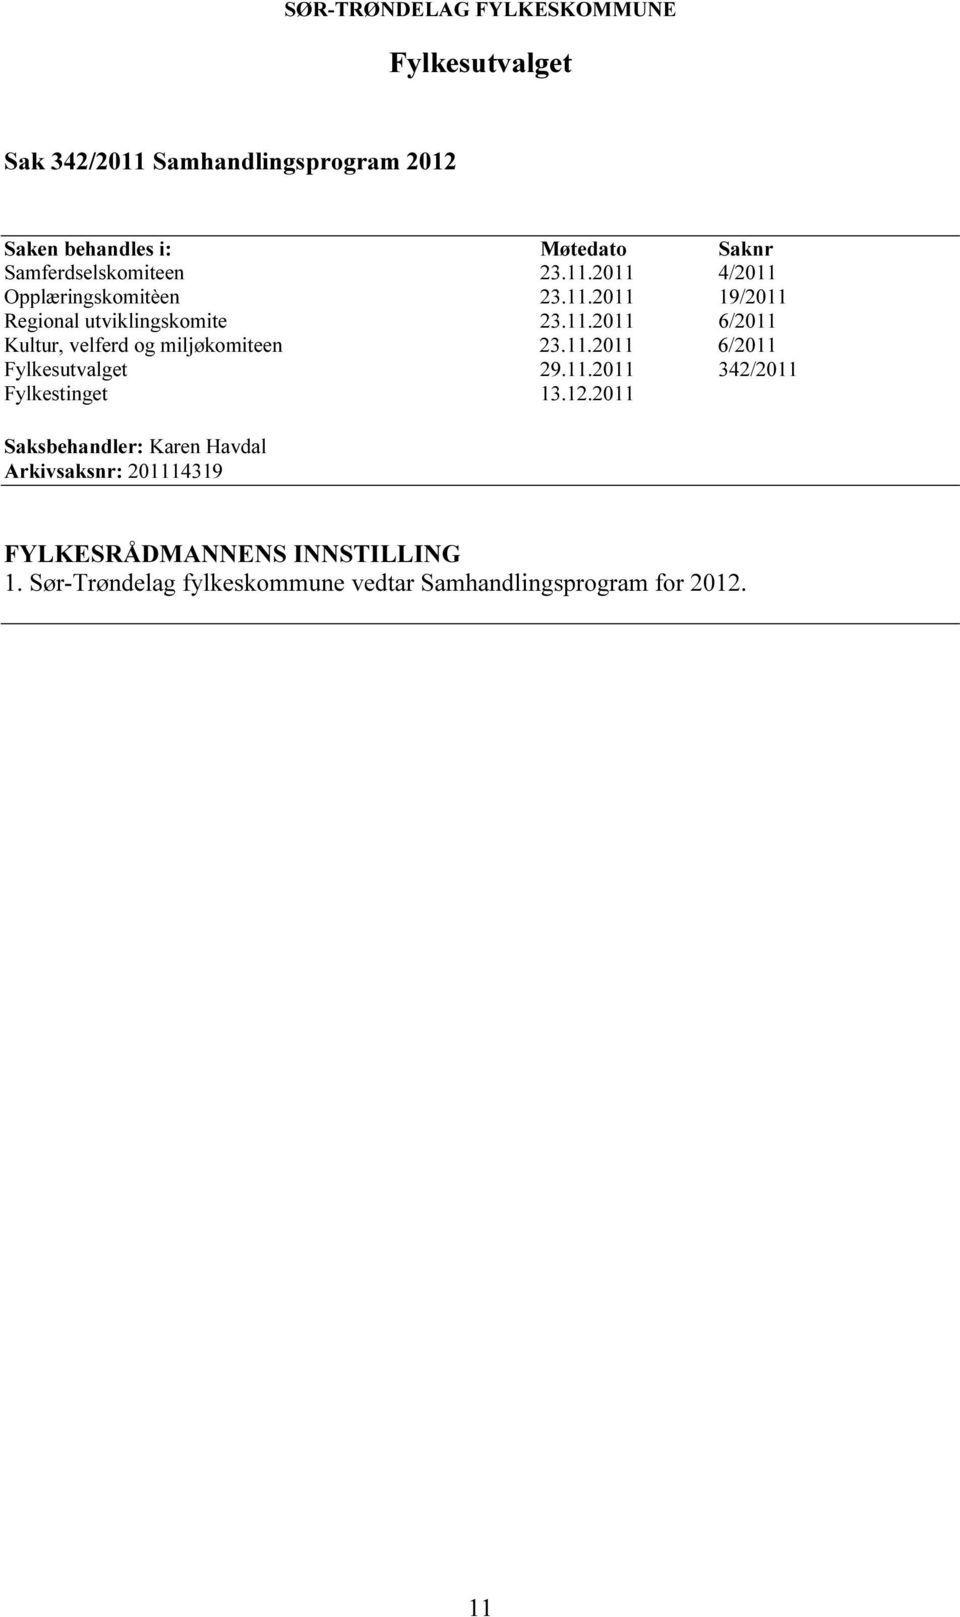 11.2011 6/2011 Fylkesutvalget 29.11.2011 342/2011 Fylkestinget 13.12.